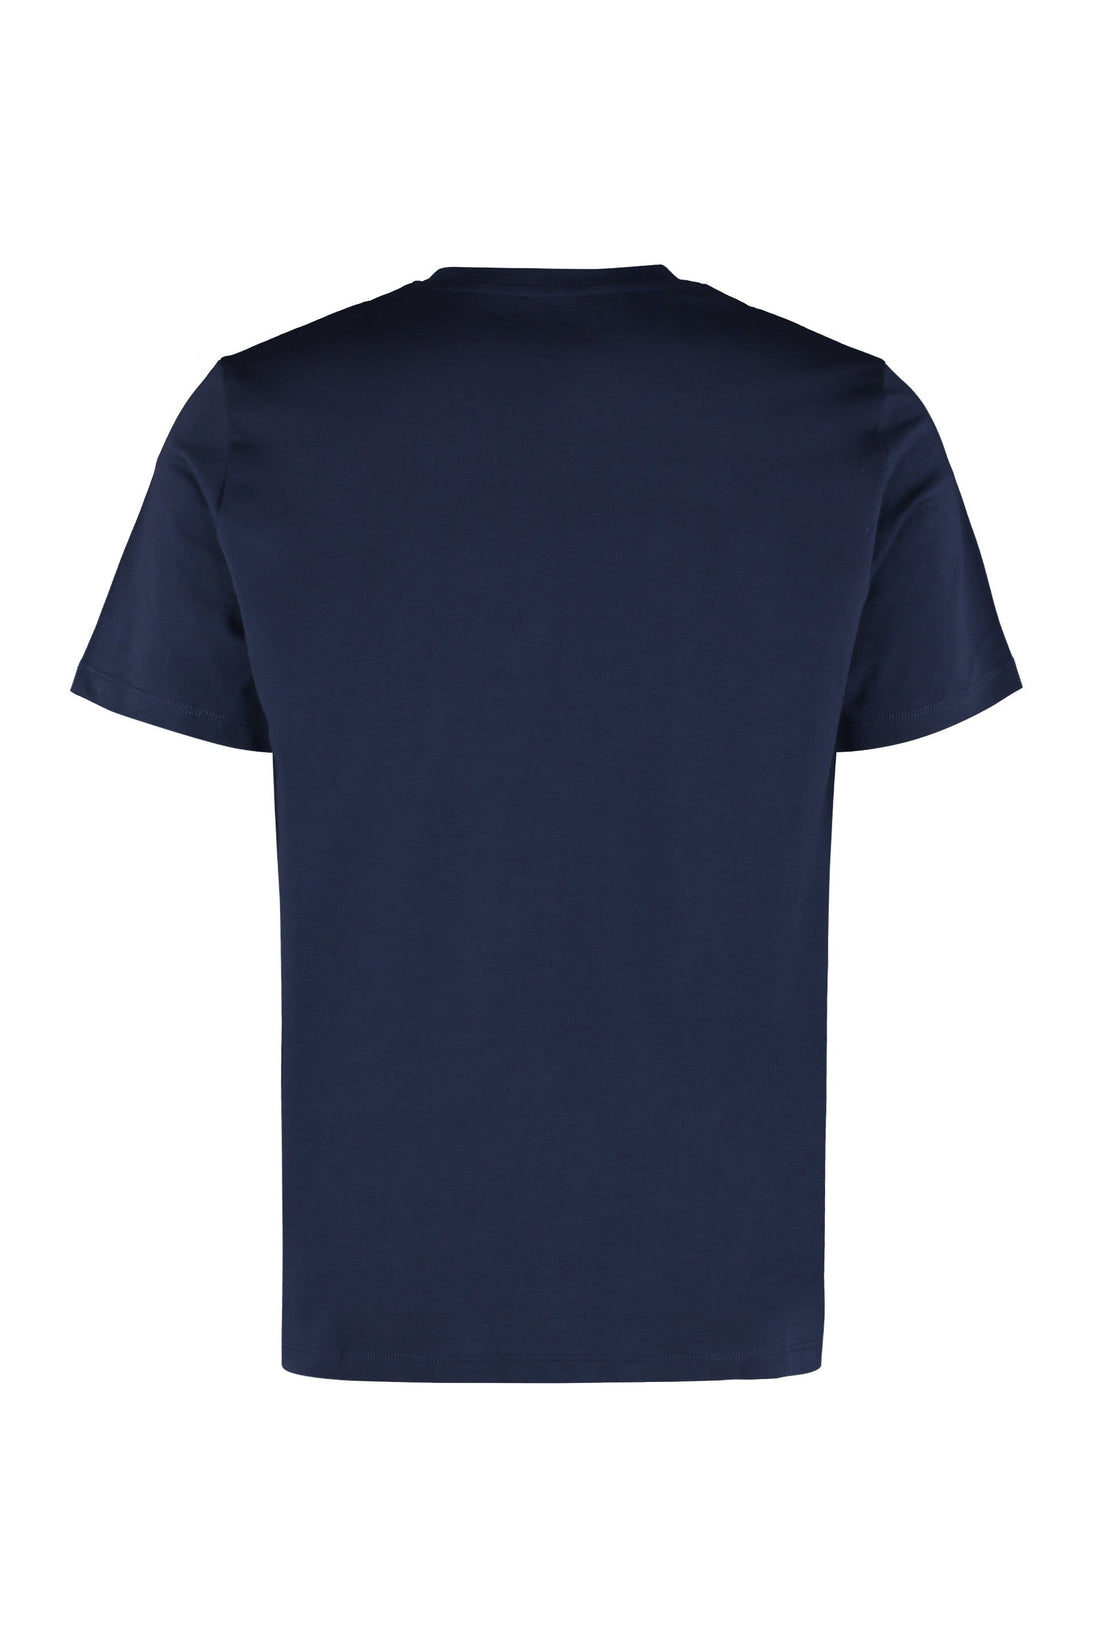 A.P.C.-OUTLET-SALE-Cotton crew-neck T-shirt-ARCHIVIST